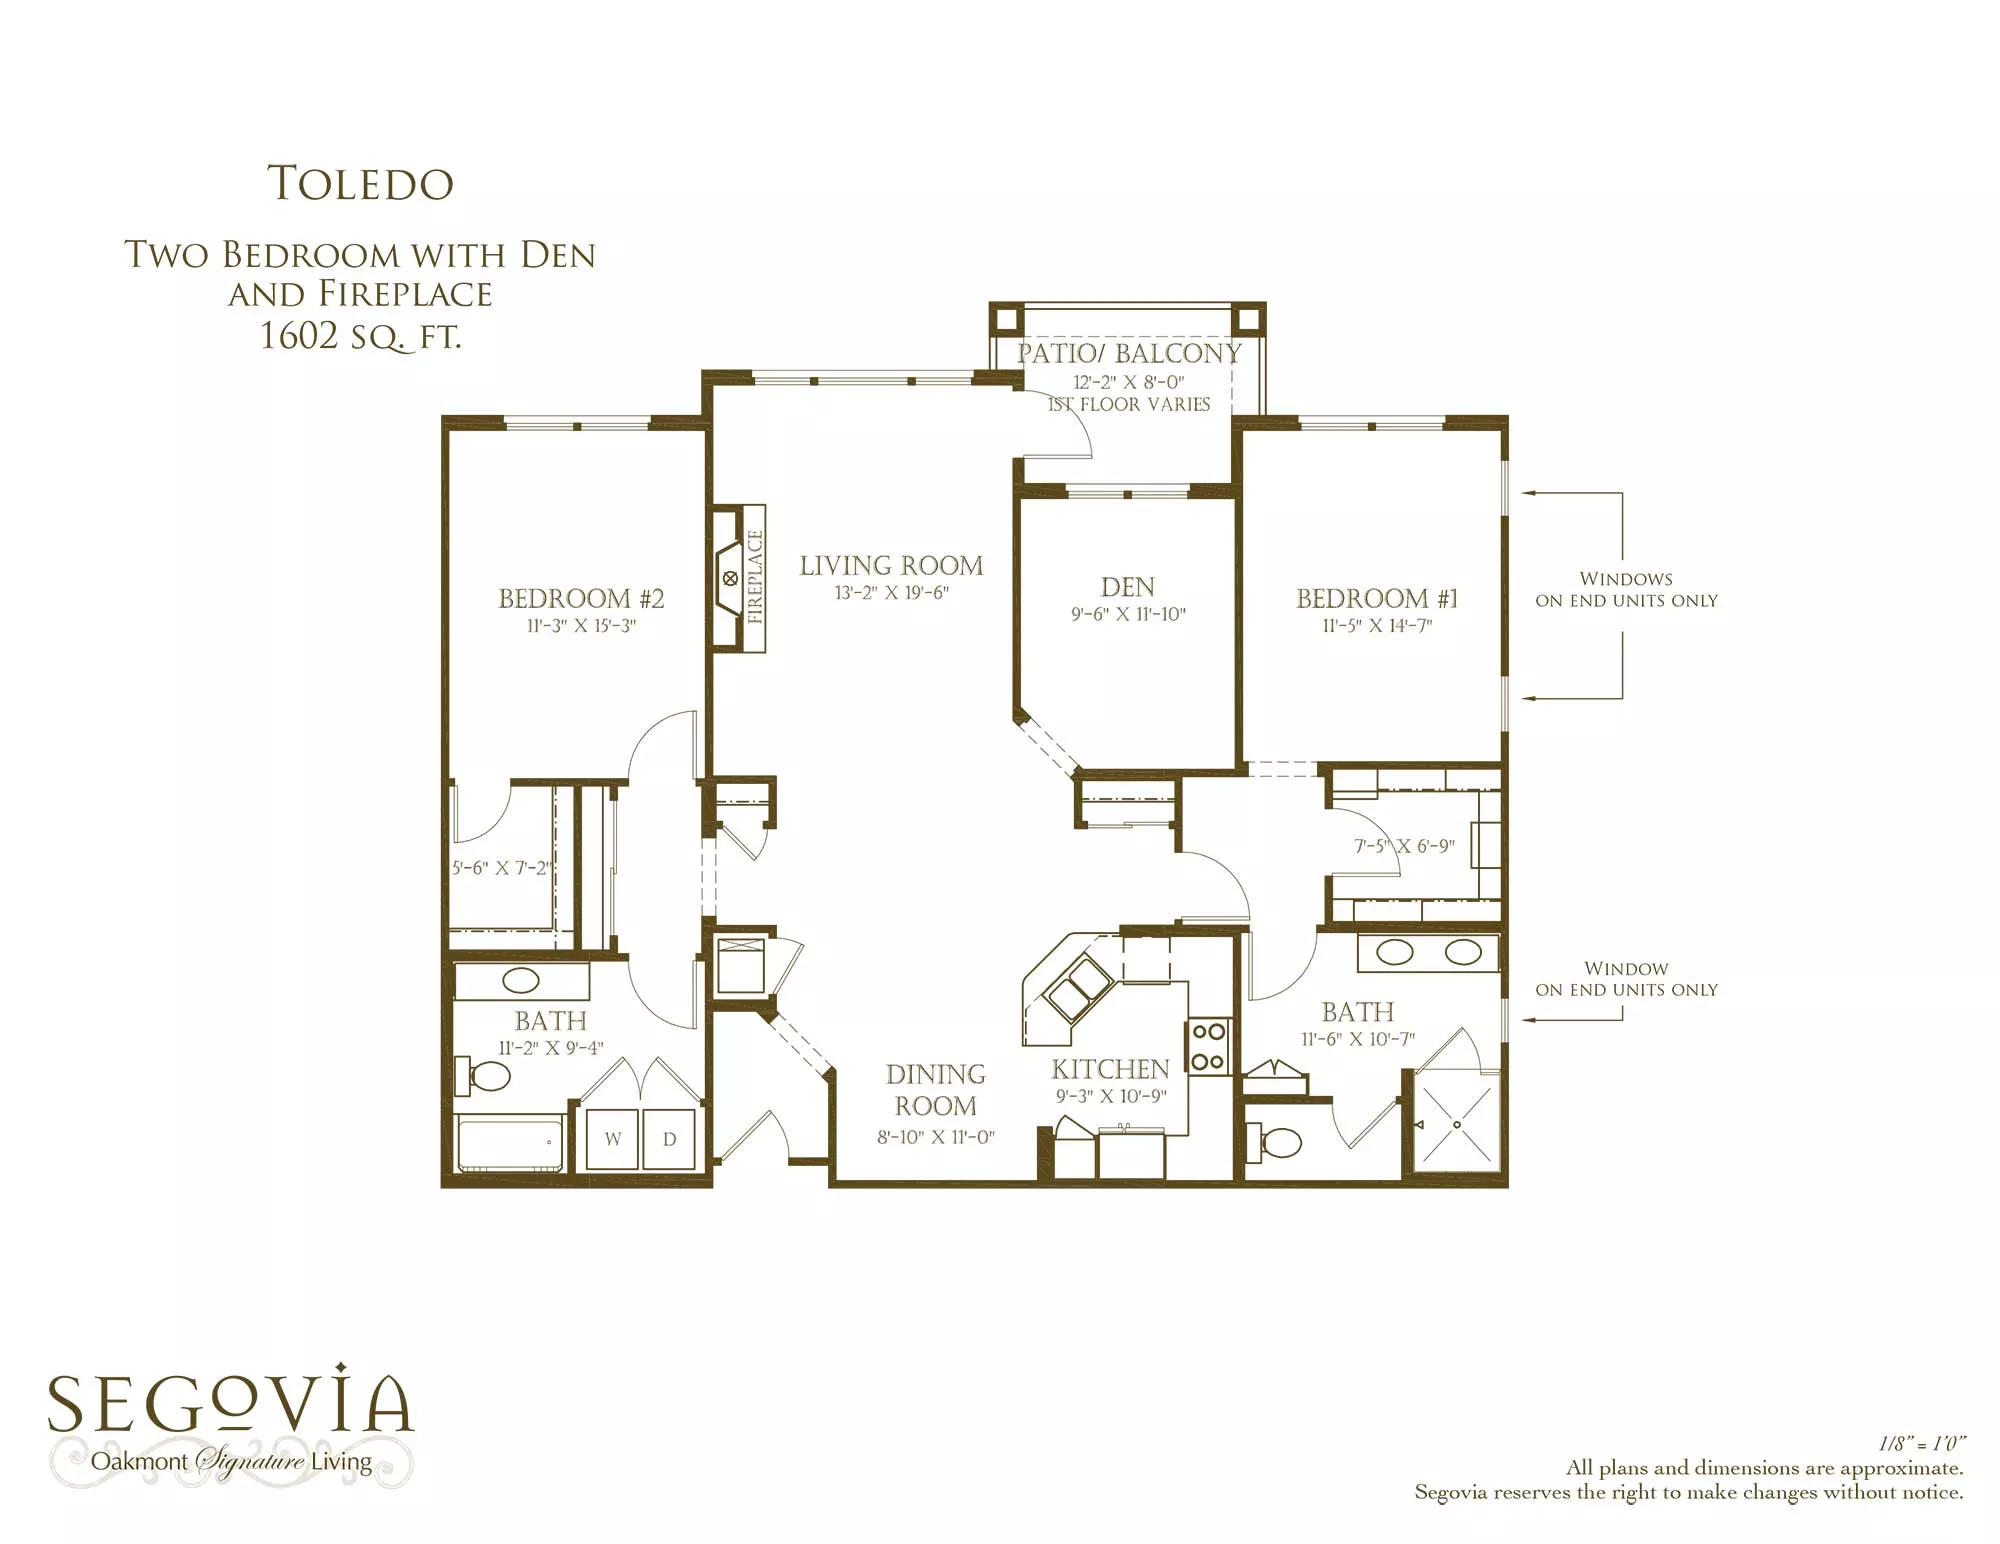 Toledo two bedroom floor plan